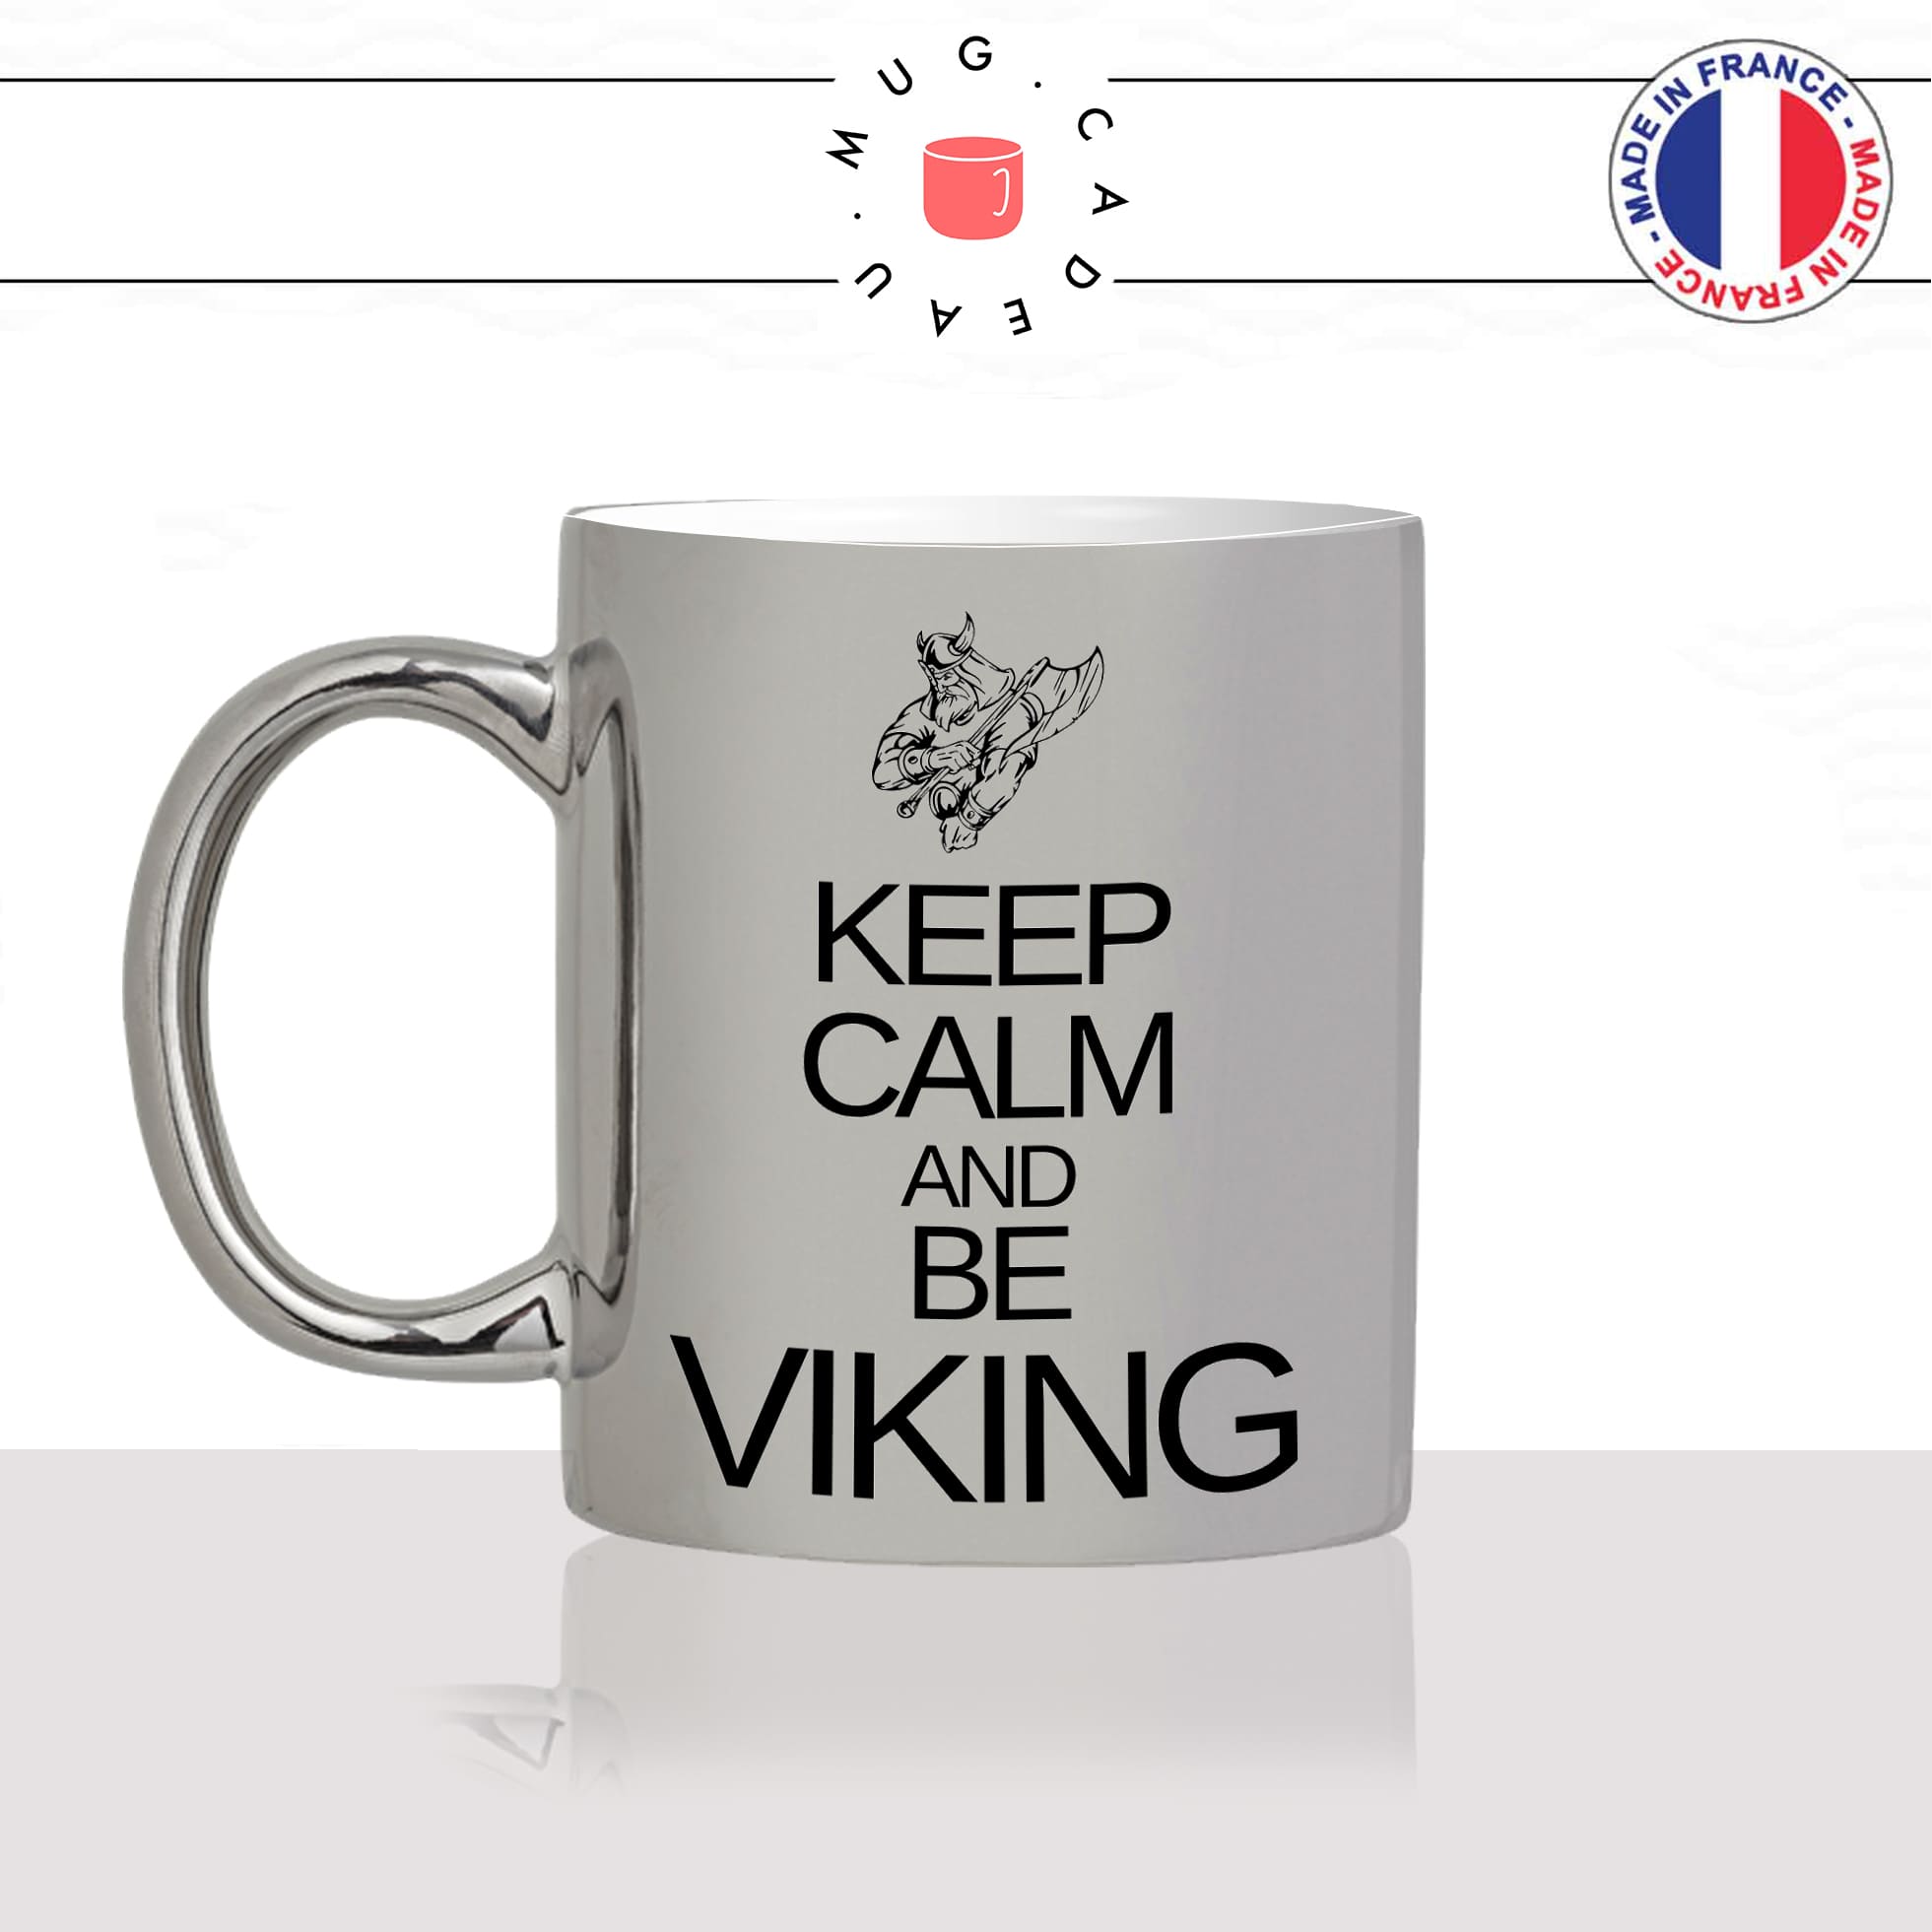 mug-tasse-argent-argenté-silver-keep-calm-and-be-viking-normand-nord-man-homme-série-stylé-humour-idée-cadeau-fun-cool-café-thé